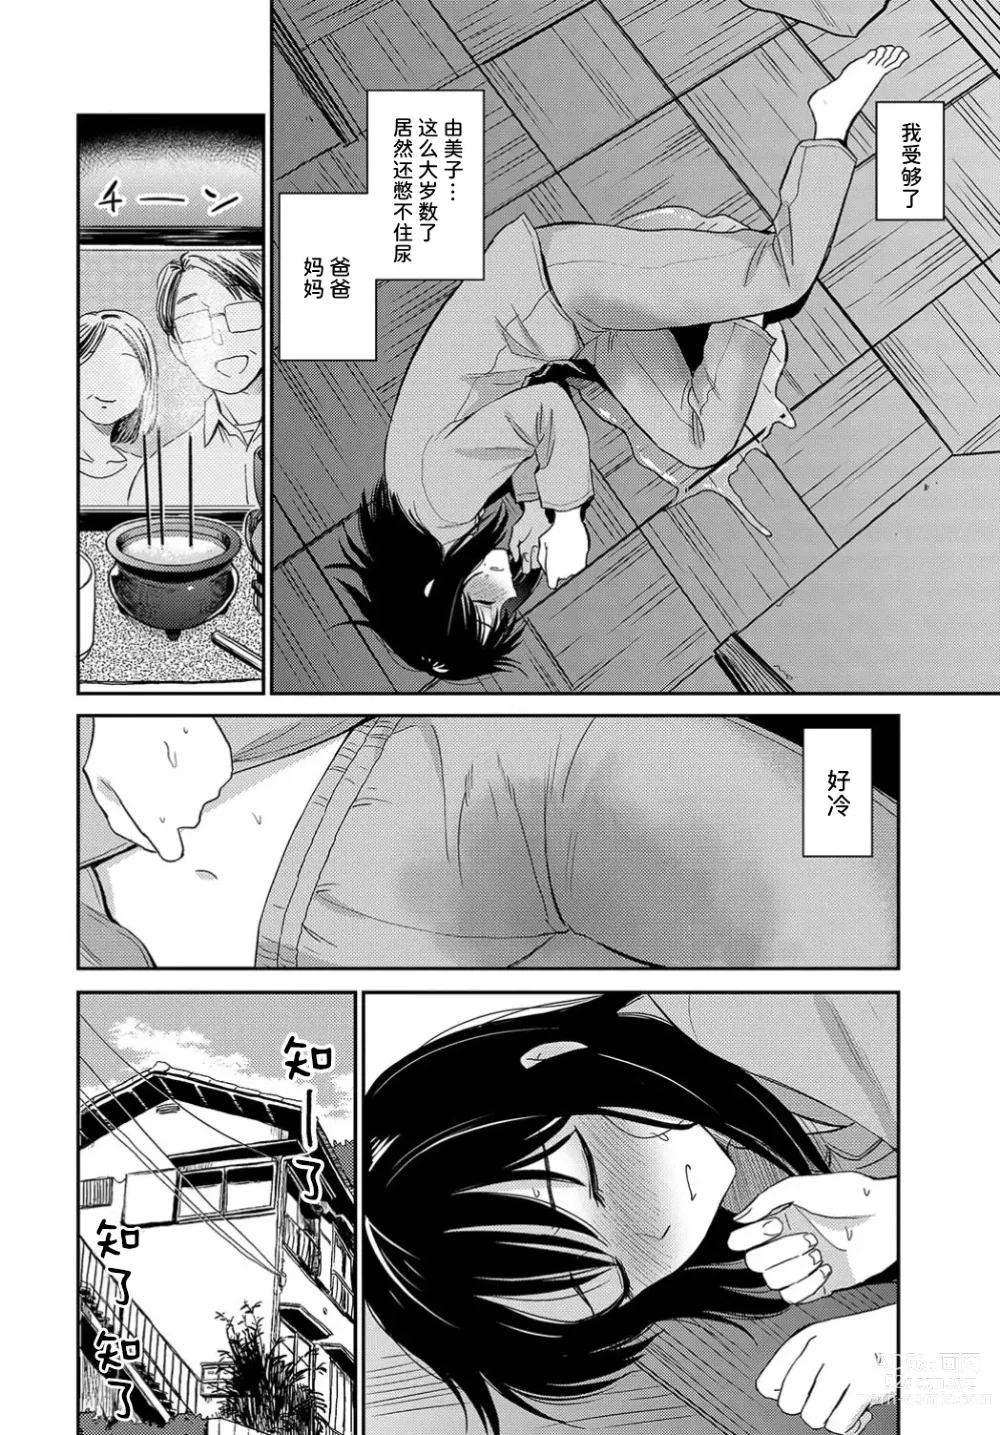 Page 5 of manga 感冒